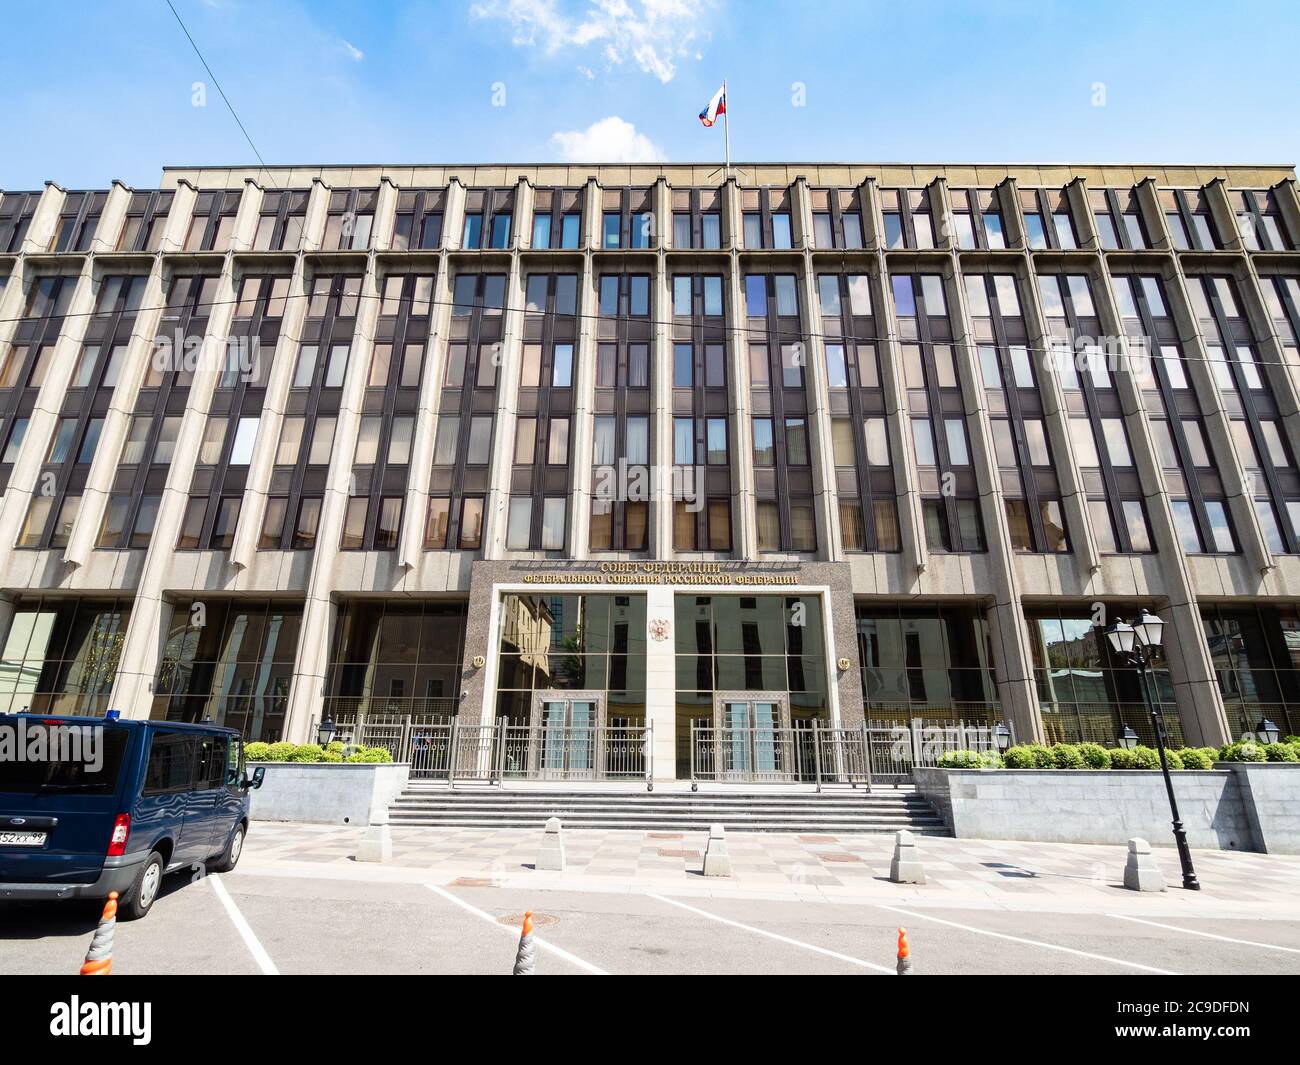 MOSCOU, RUSSIE - 12 JUILLET 2020 : façade du bâtiment du Conseil de la Fédération de l'Assemblée fédérale de la Fédération de Russie sur Bolshaya Dmitrovka Stree Banque D'Images